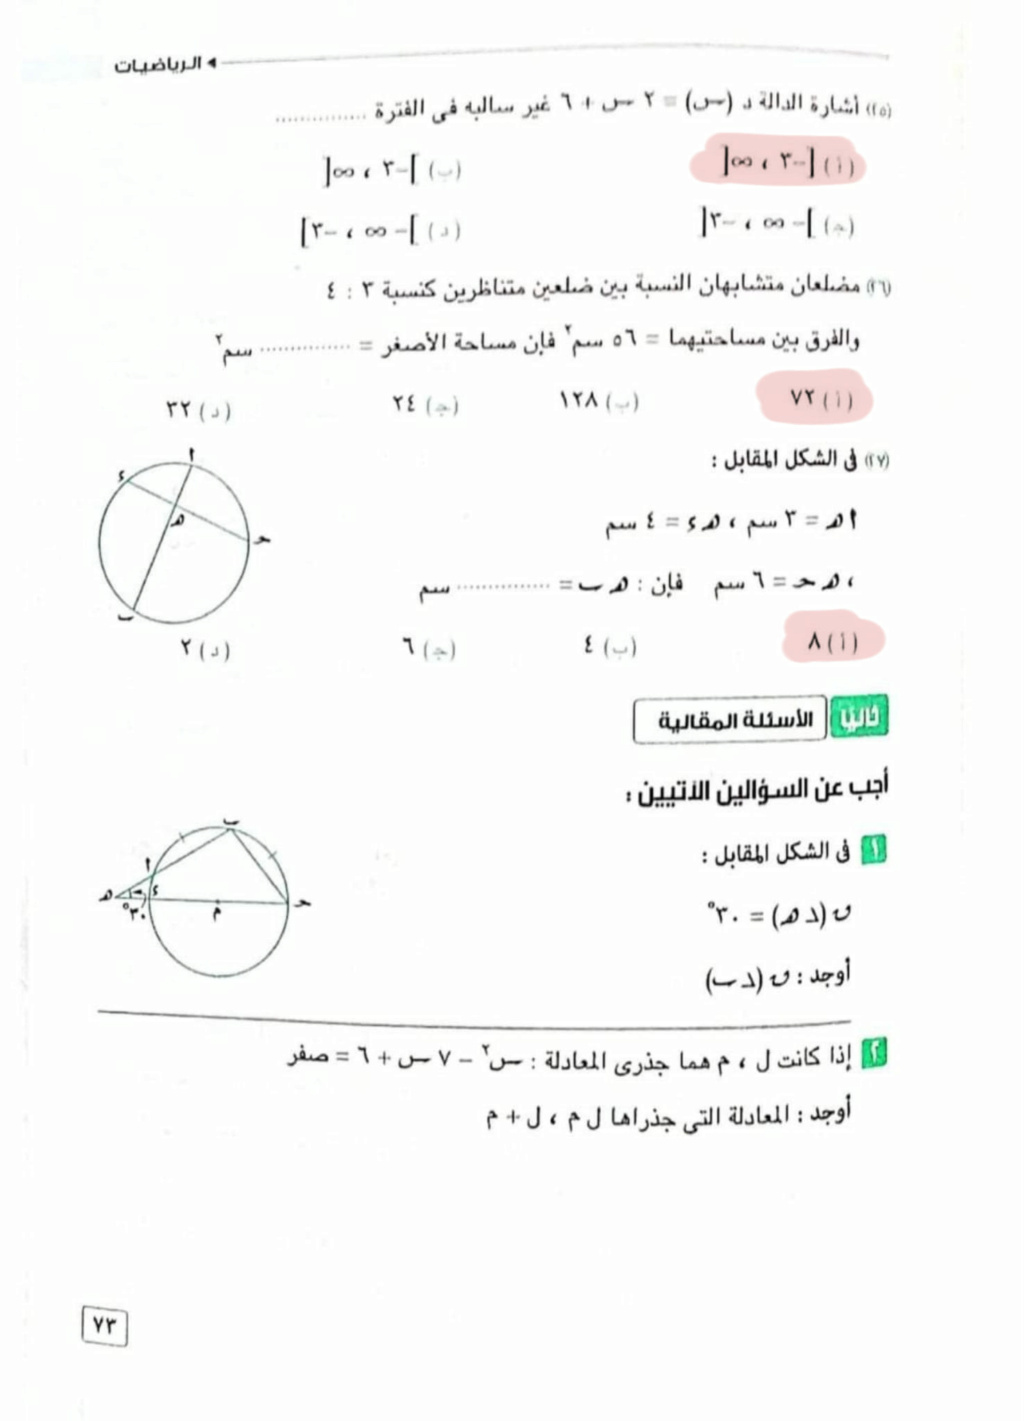 الرياضيات - امتحان الرياضيات للصف الأول الثانوي ترم اول توجيه العاشر من رمضان 8247